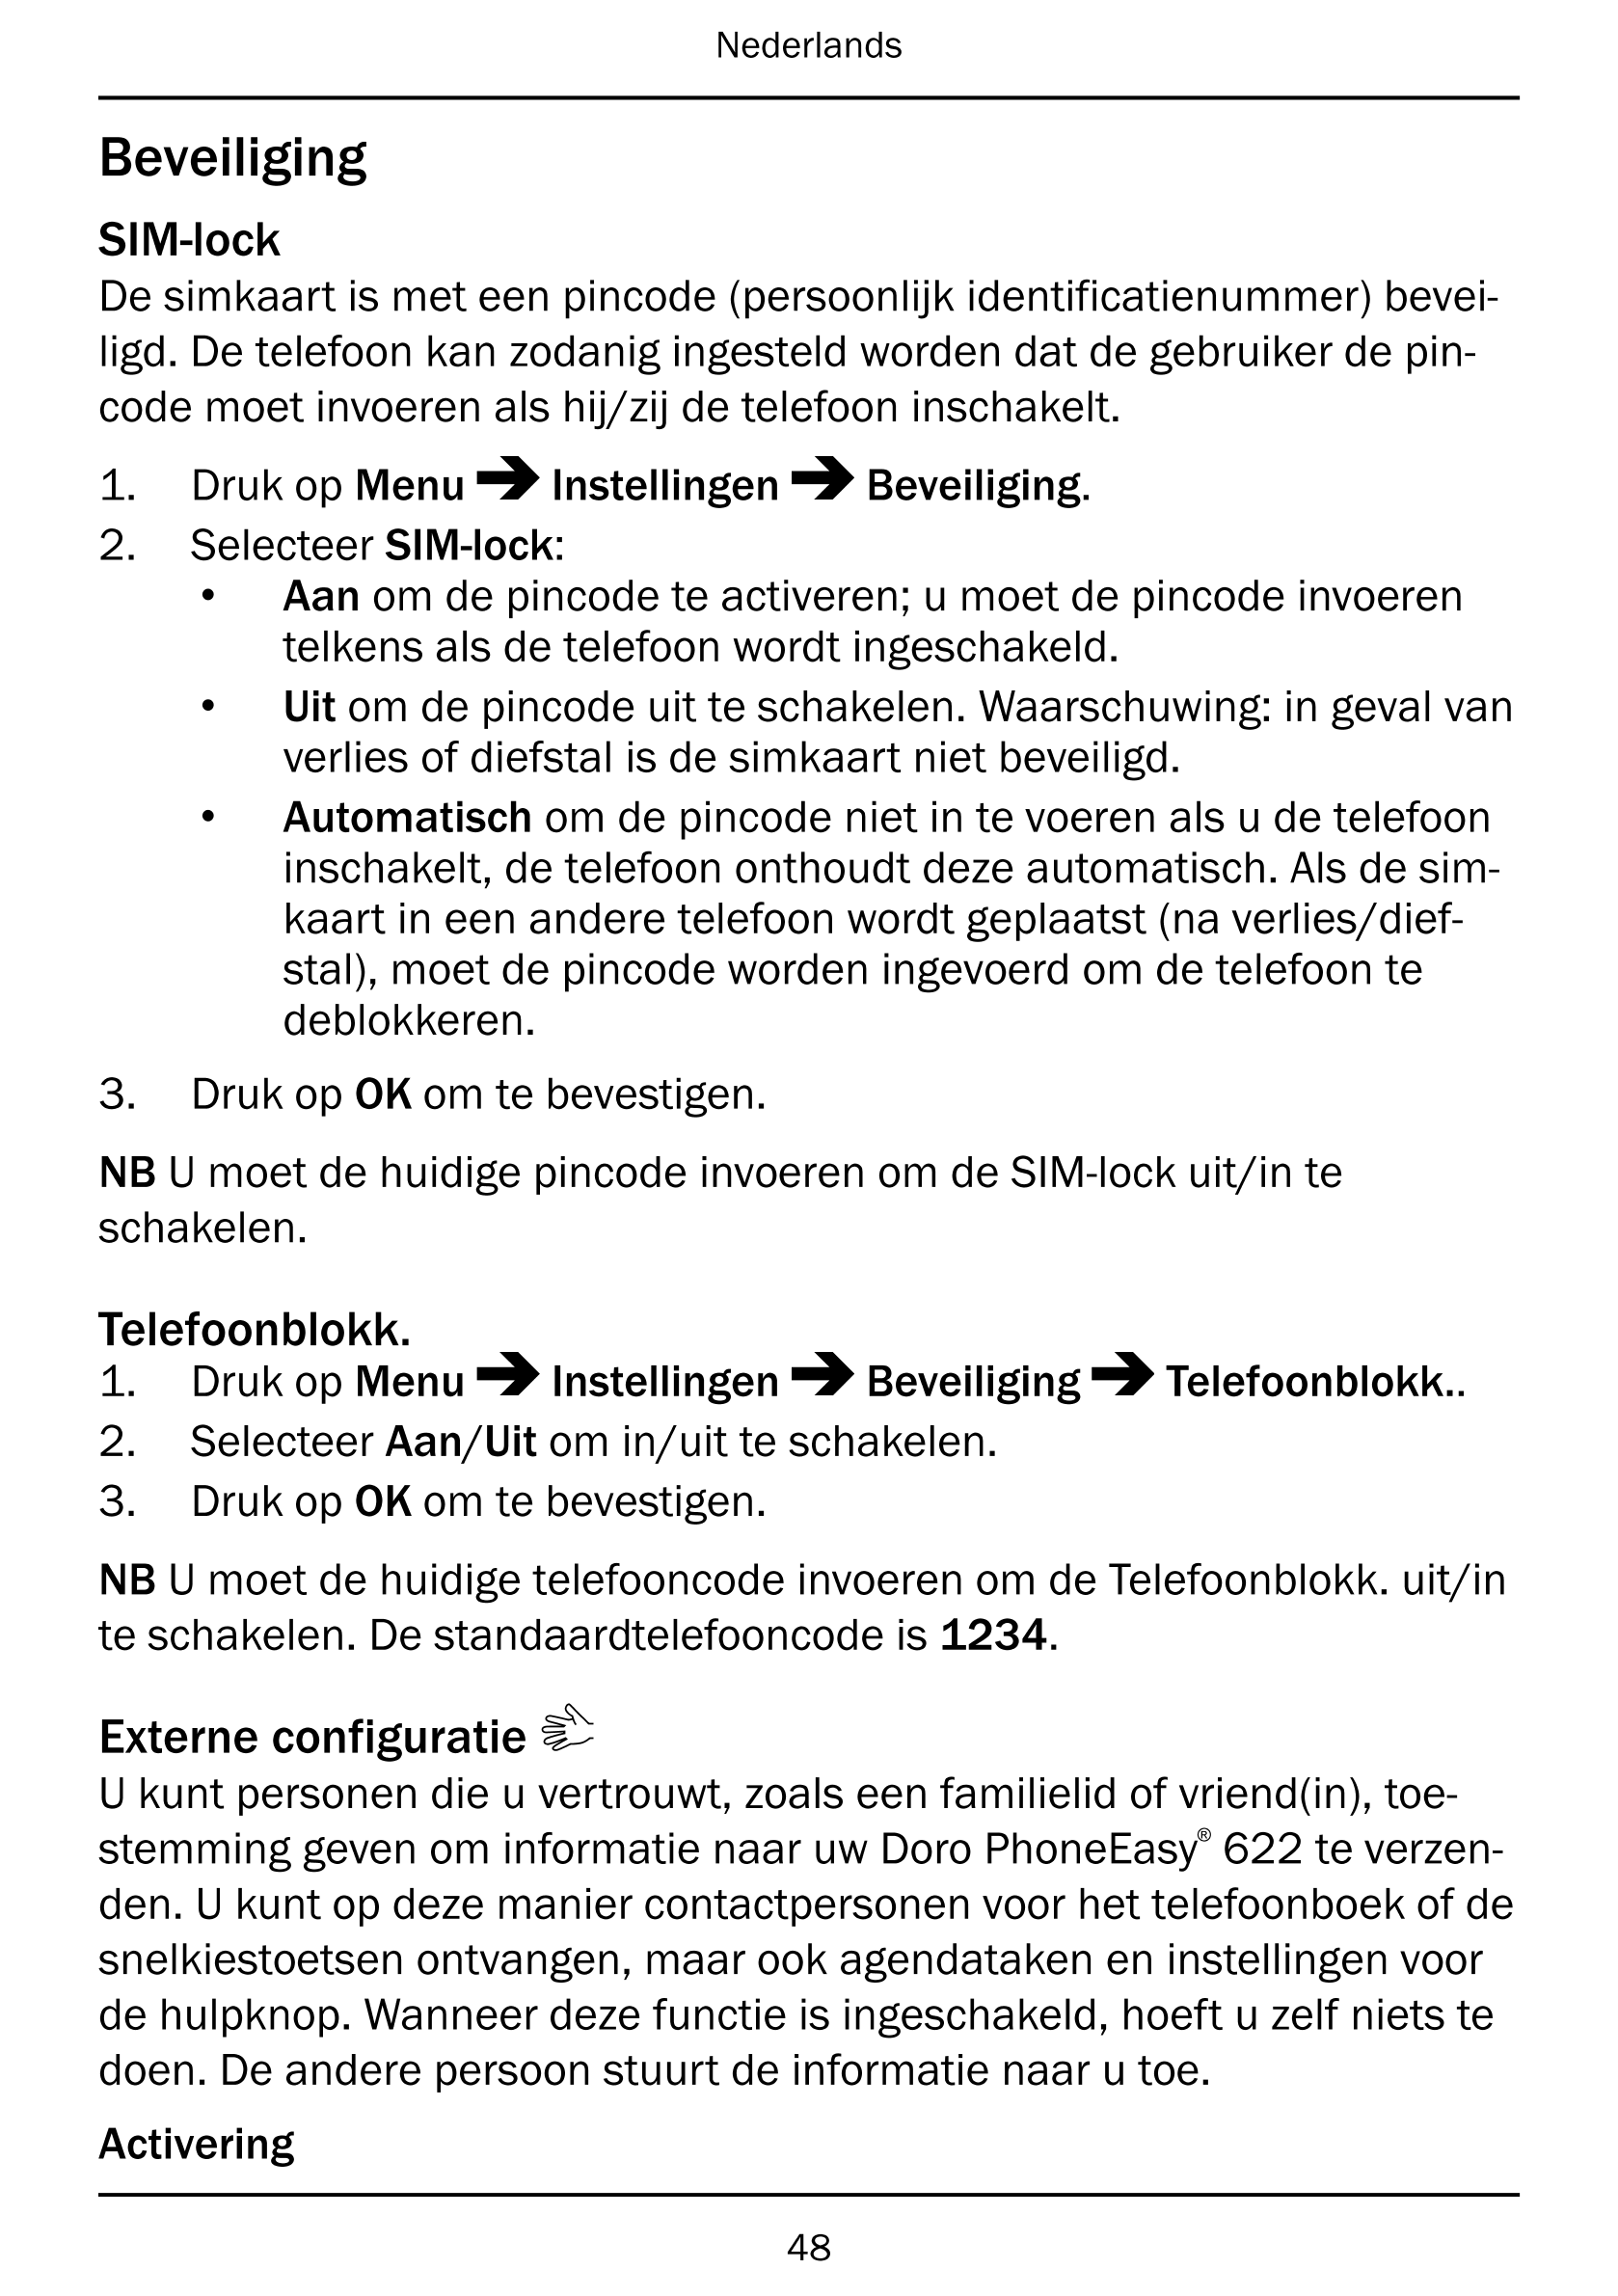 Nederlands
Beveiliging
SIM-lock
De simkaart is met een pincode (persoonlijk identificatienummer) bevei-
ligd. De telefoon kan zo